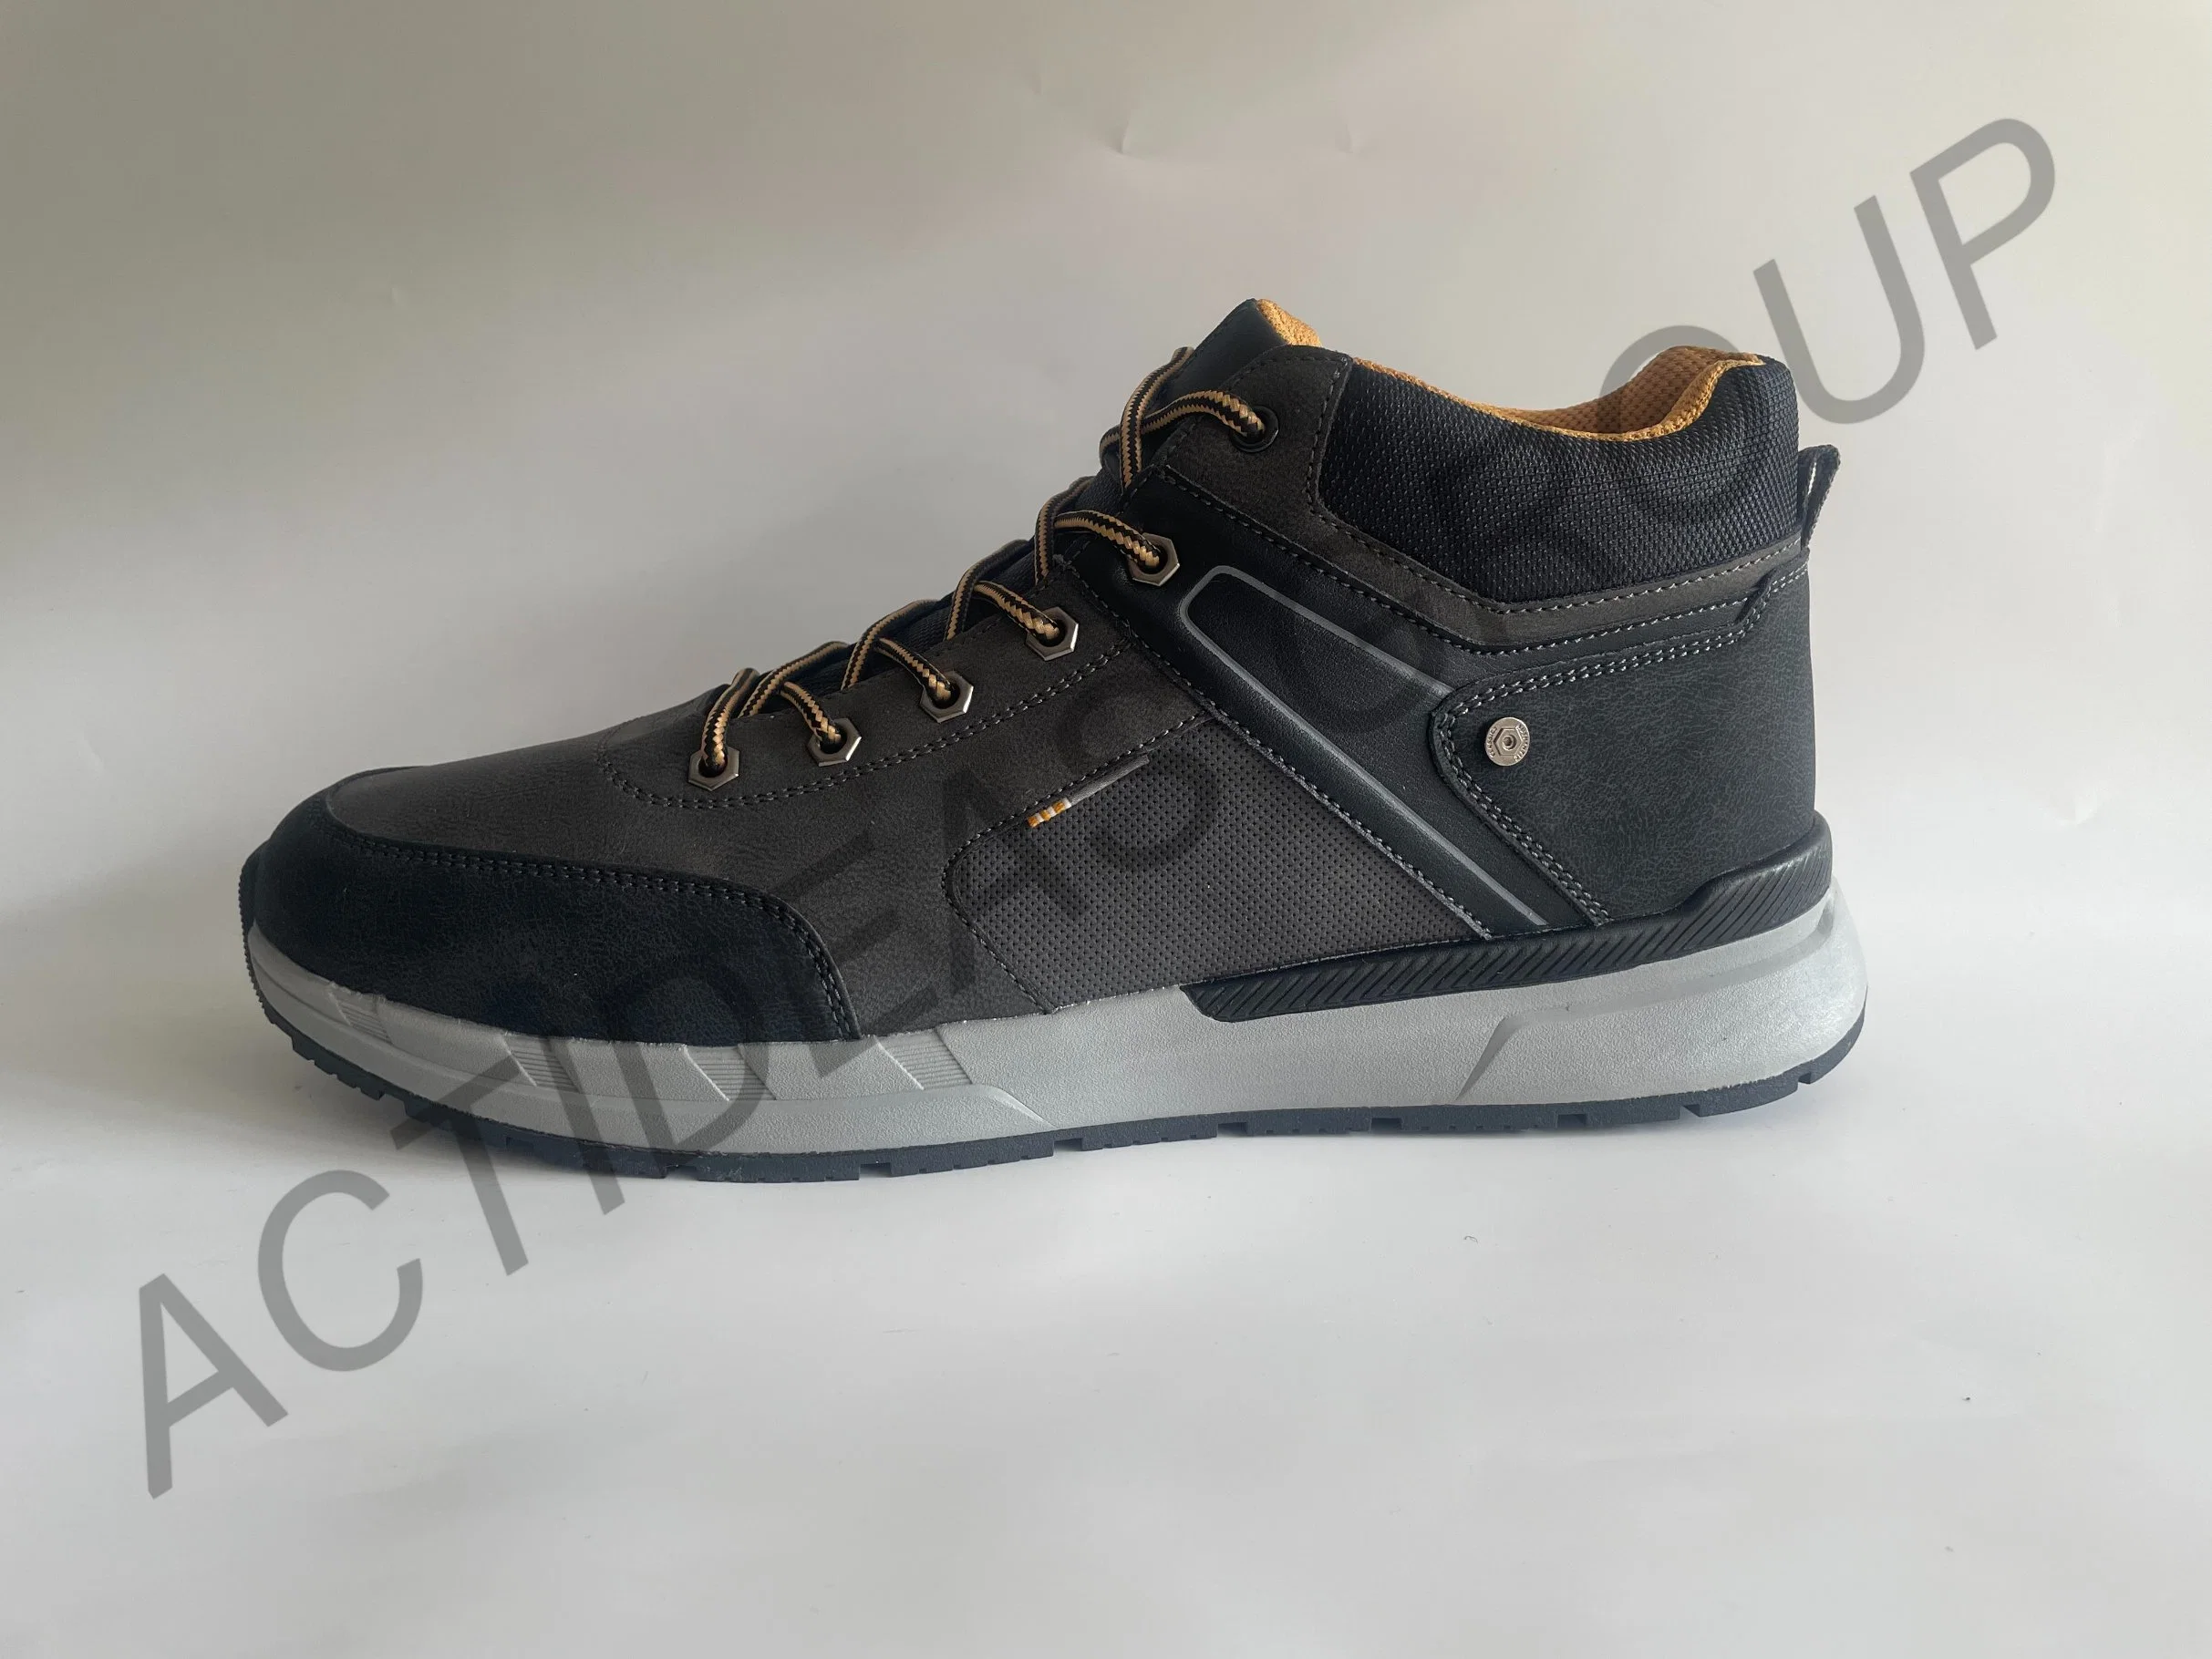 Легкие кроссовки Construction Leather Shoe for Men Снекер со стальными носком Мужская обувь для безопасности Safeti Work